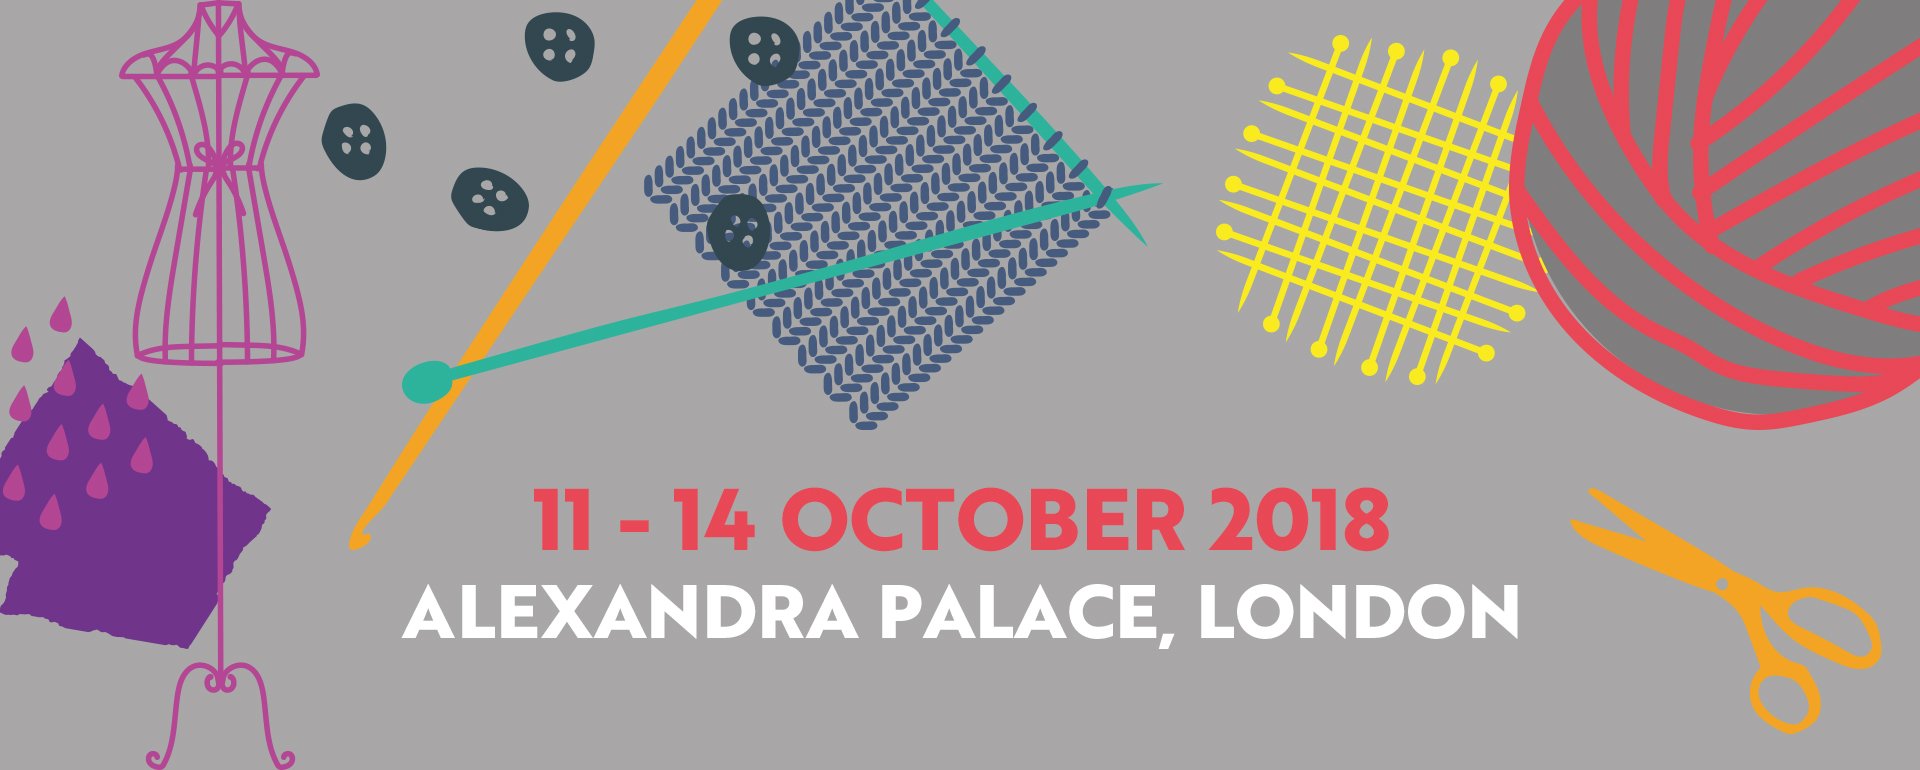 Knitting & Stitching Show, Alexandra Palace, London 11-14 Oct, 2018 - Ticket Code